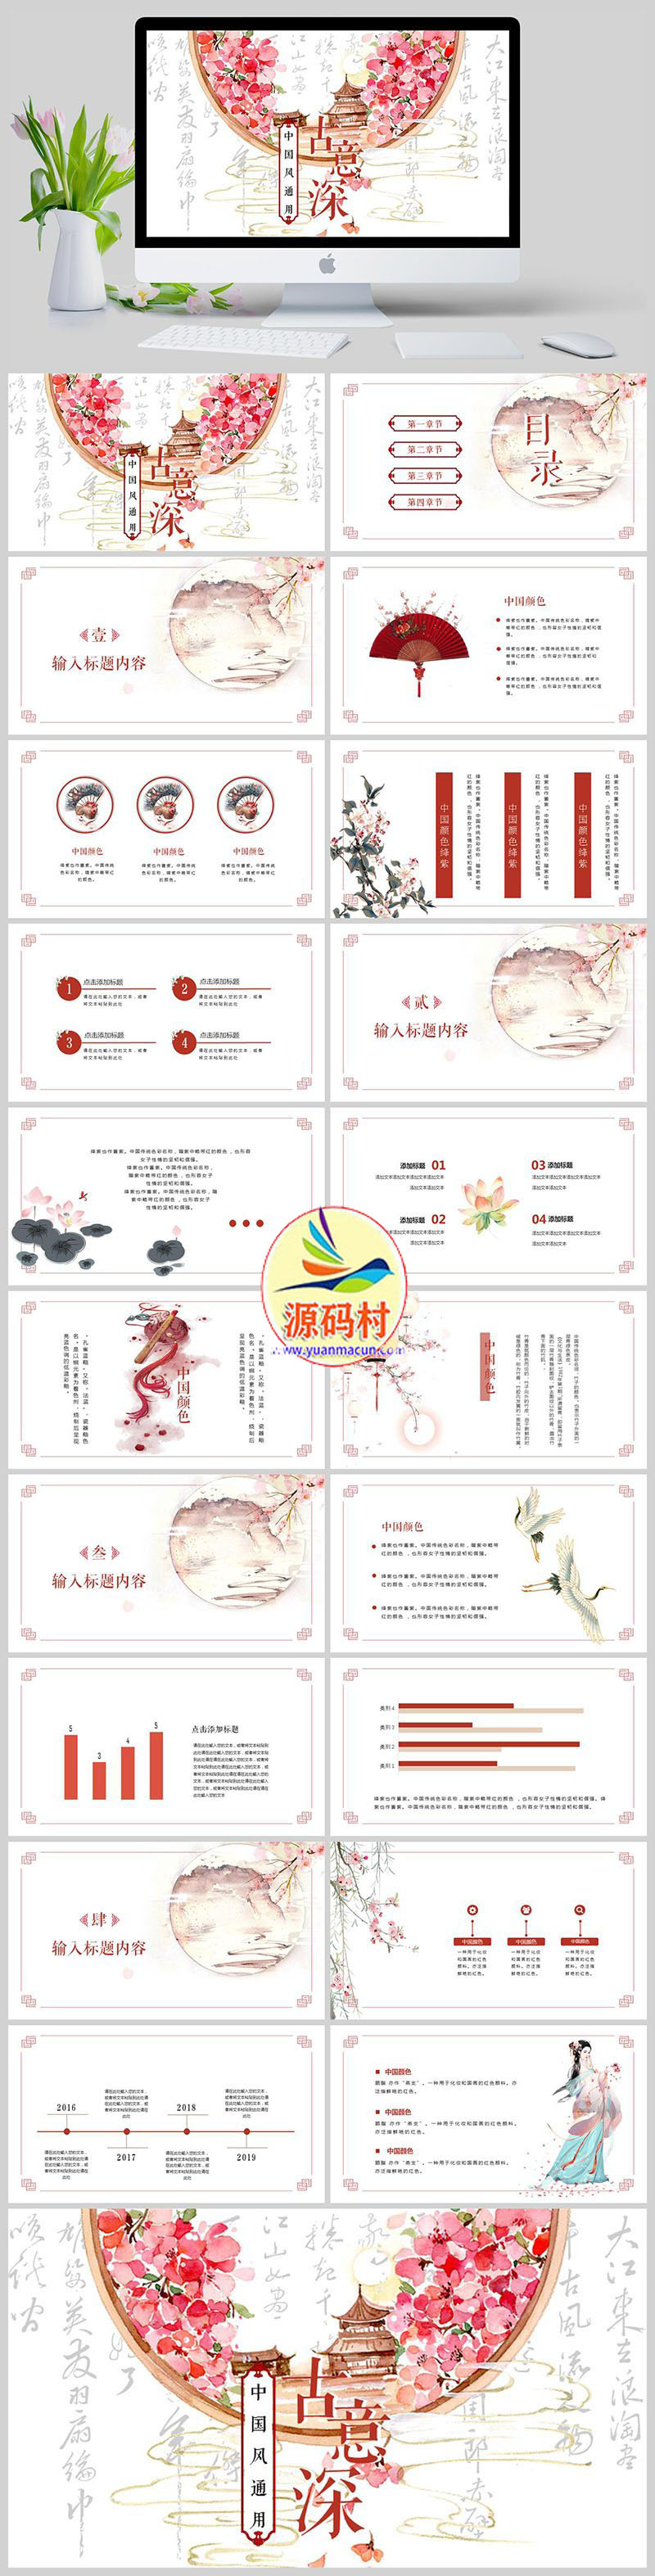 古意深古风中国风古瓷壁画宣传通用PPT模板下载,123.jpg,模板下载,第1张